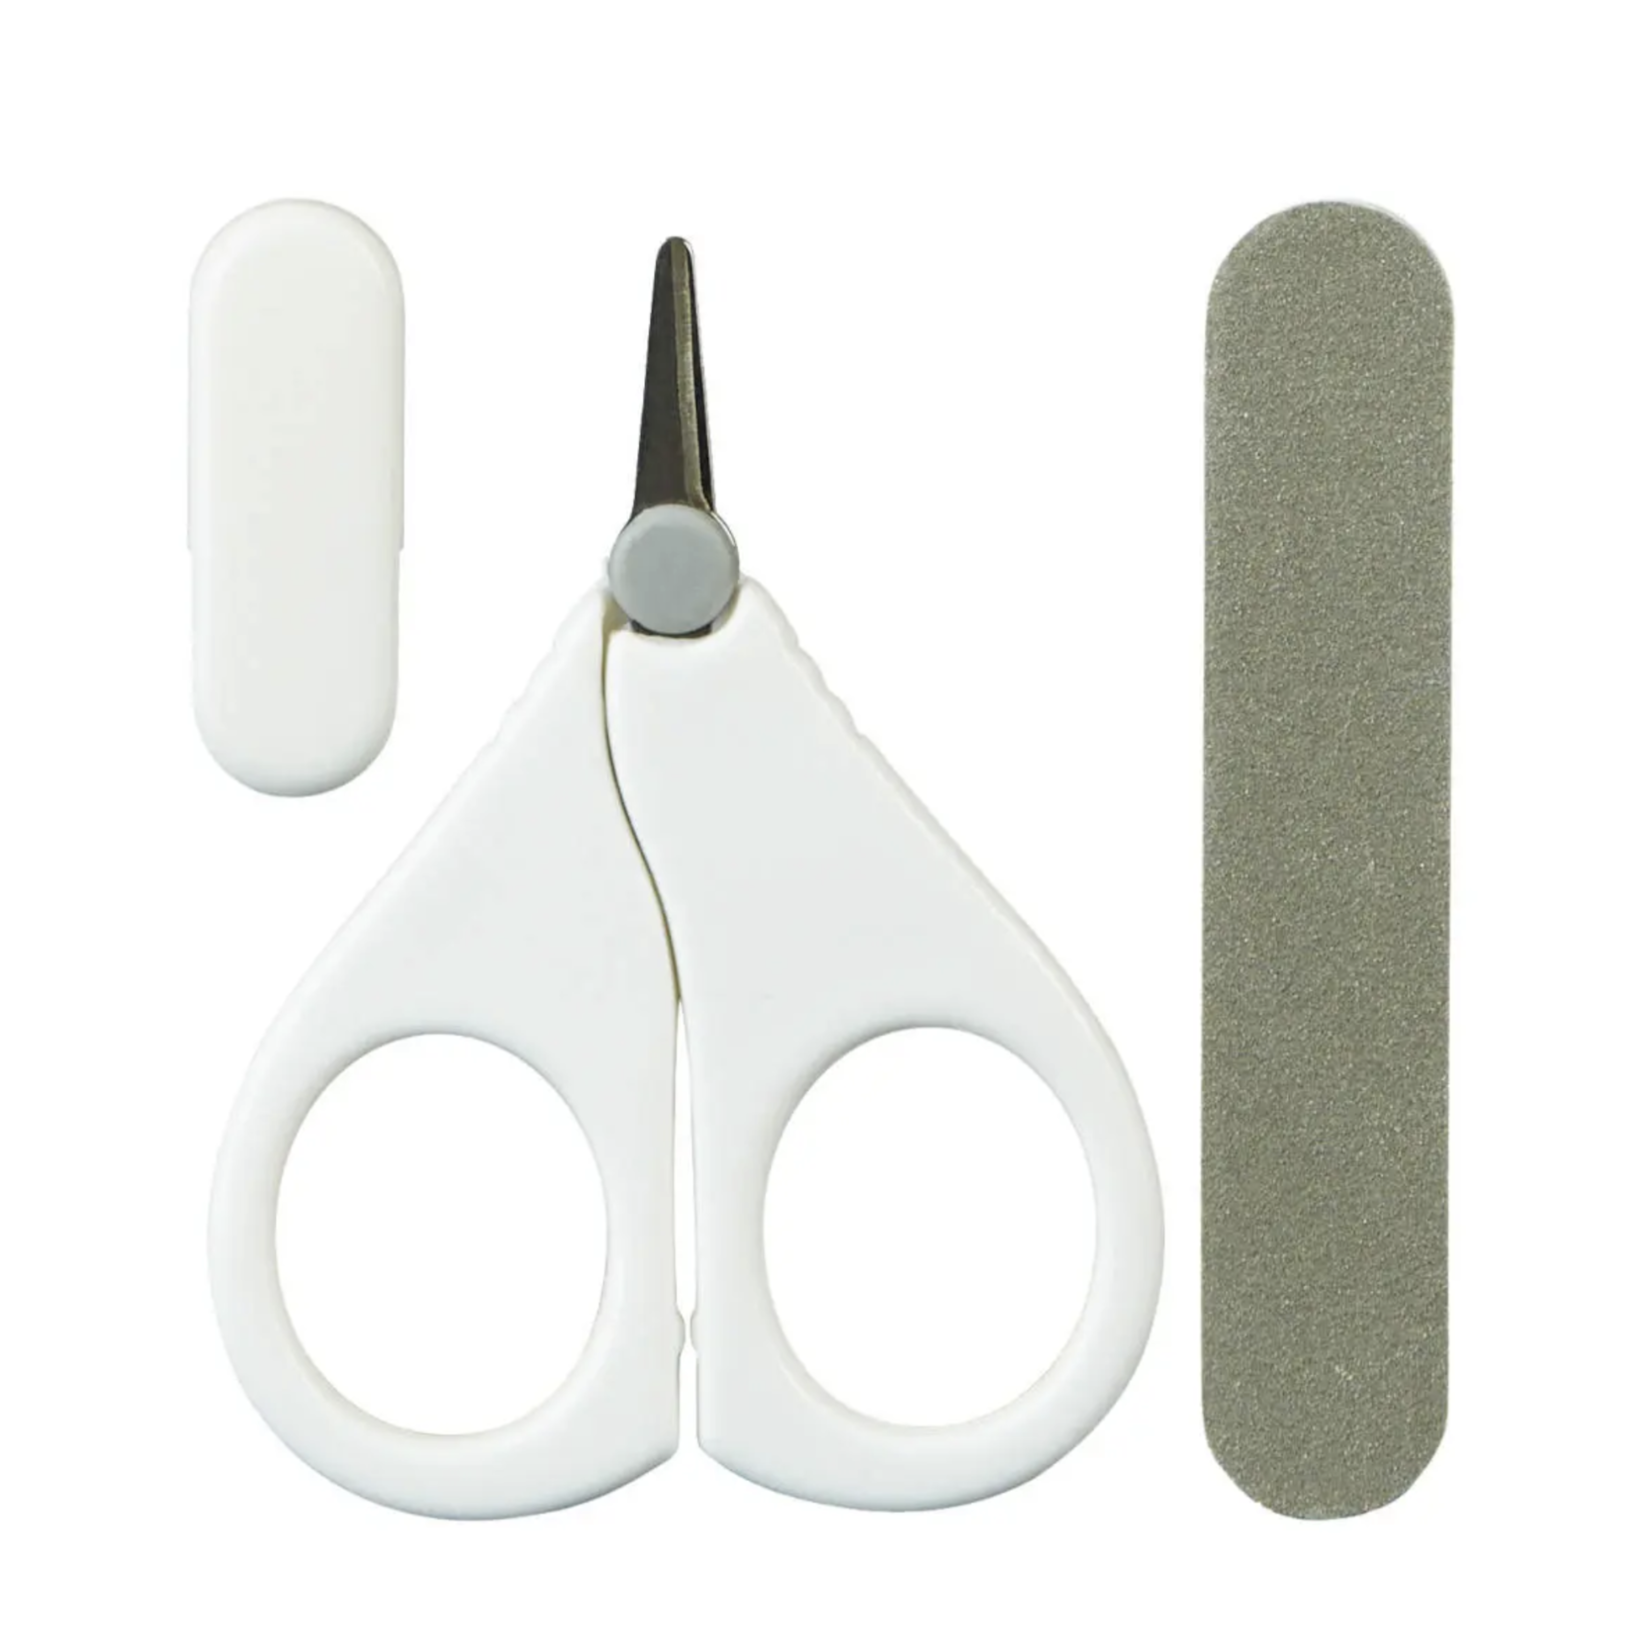 Mininor Baby Nail Scissors